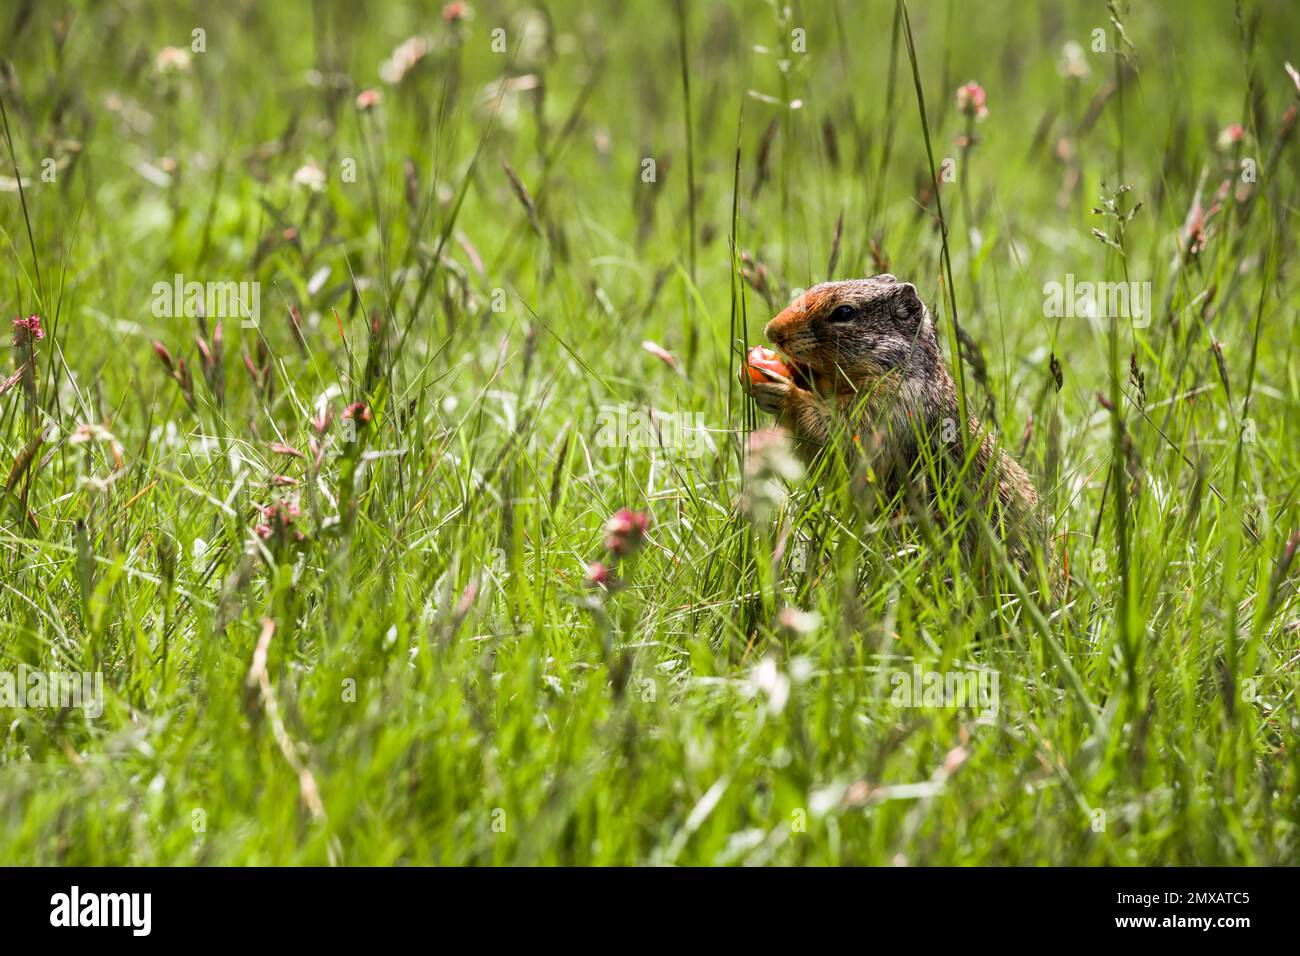 L'écureuil du Columbian Ground mange des baies. Un rongeur tombe dans l'herbe des montagnes Rocheuses. Faune Banff, Alberta. Canada Banque D'Images